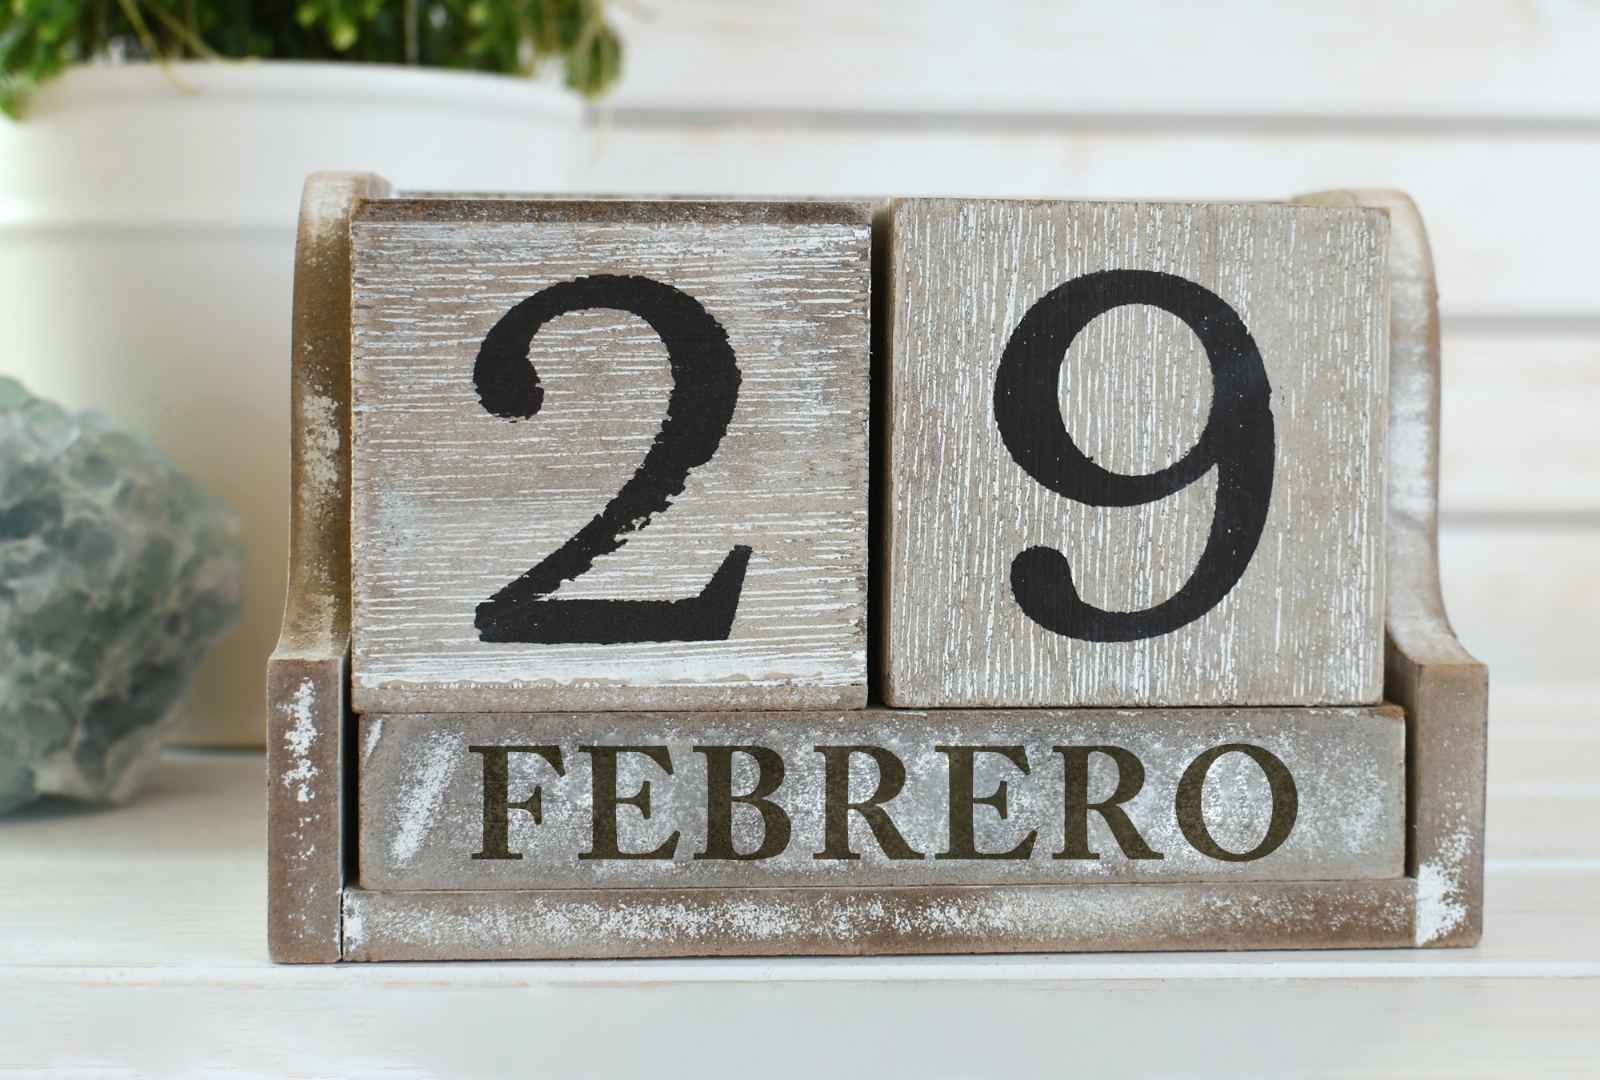 Año bisiesto: ¿Cuándo cumplen años los que nacen el 29 de febrero?